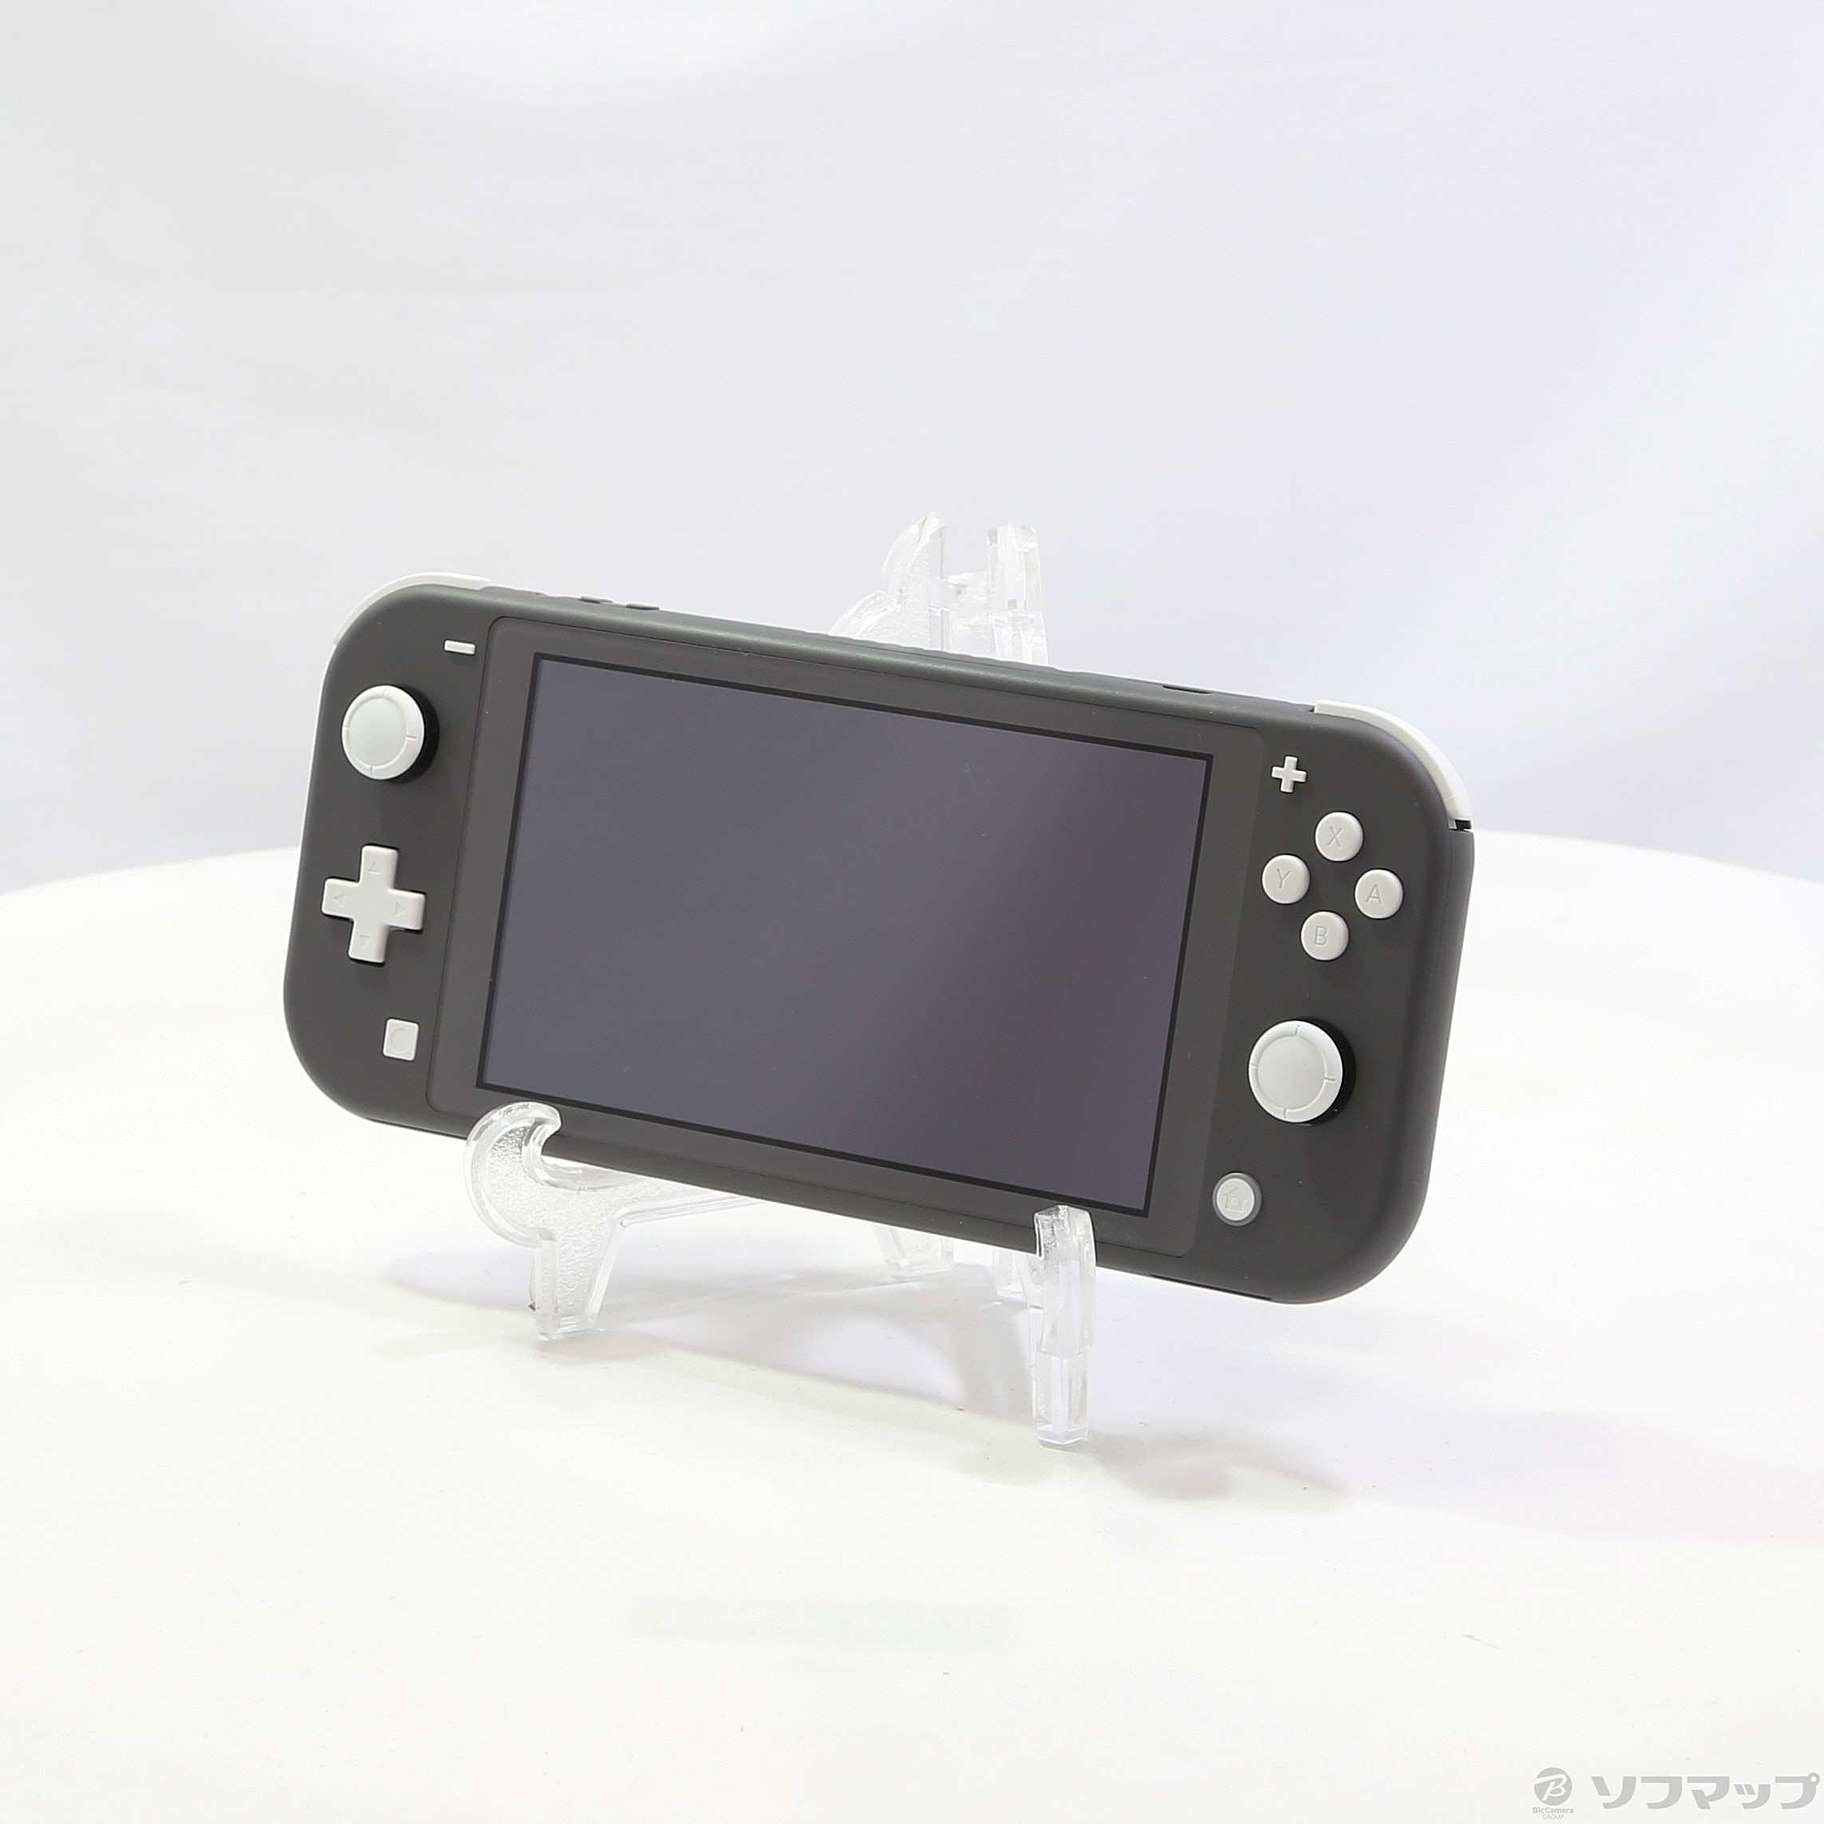 中古】セール対象品 Nintendo Switch Lite グレー ◇06/24(金)値下げ